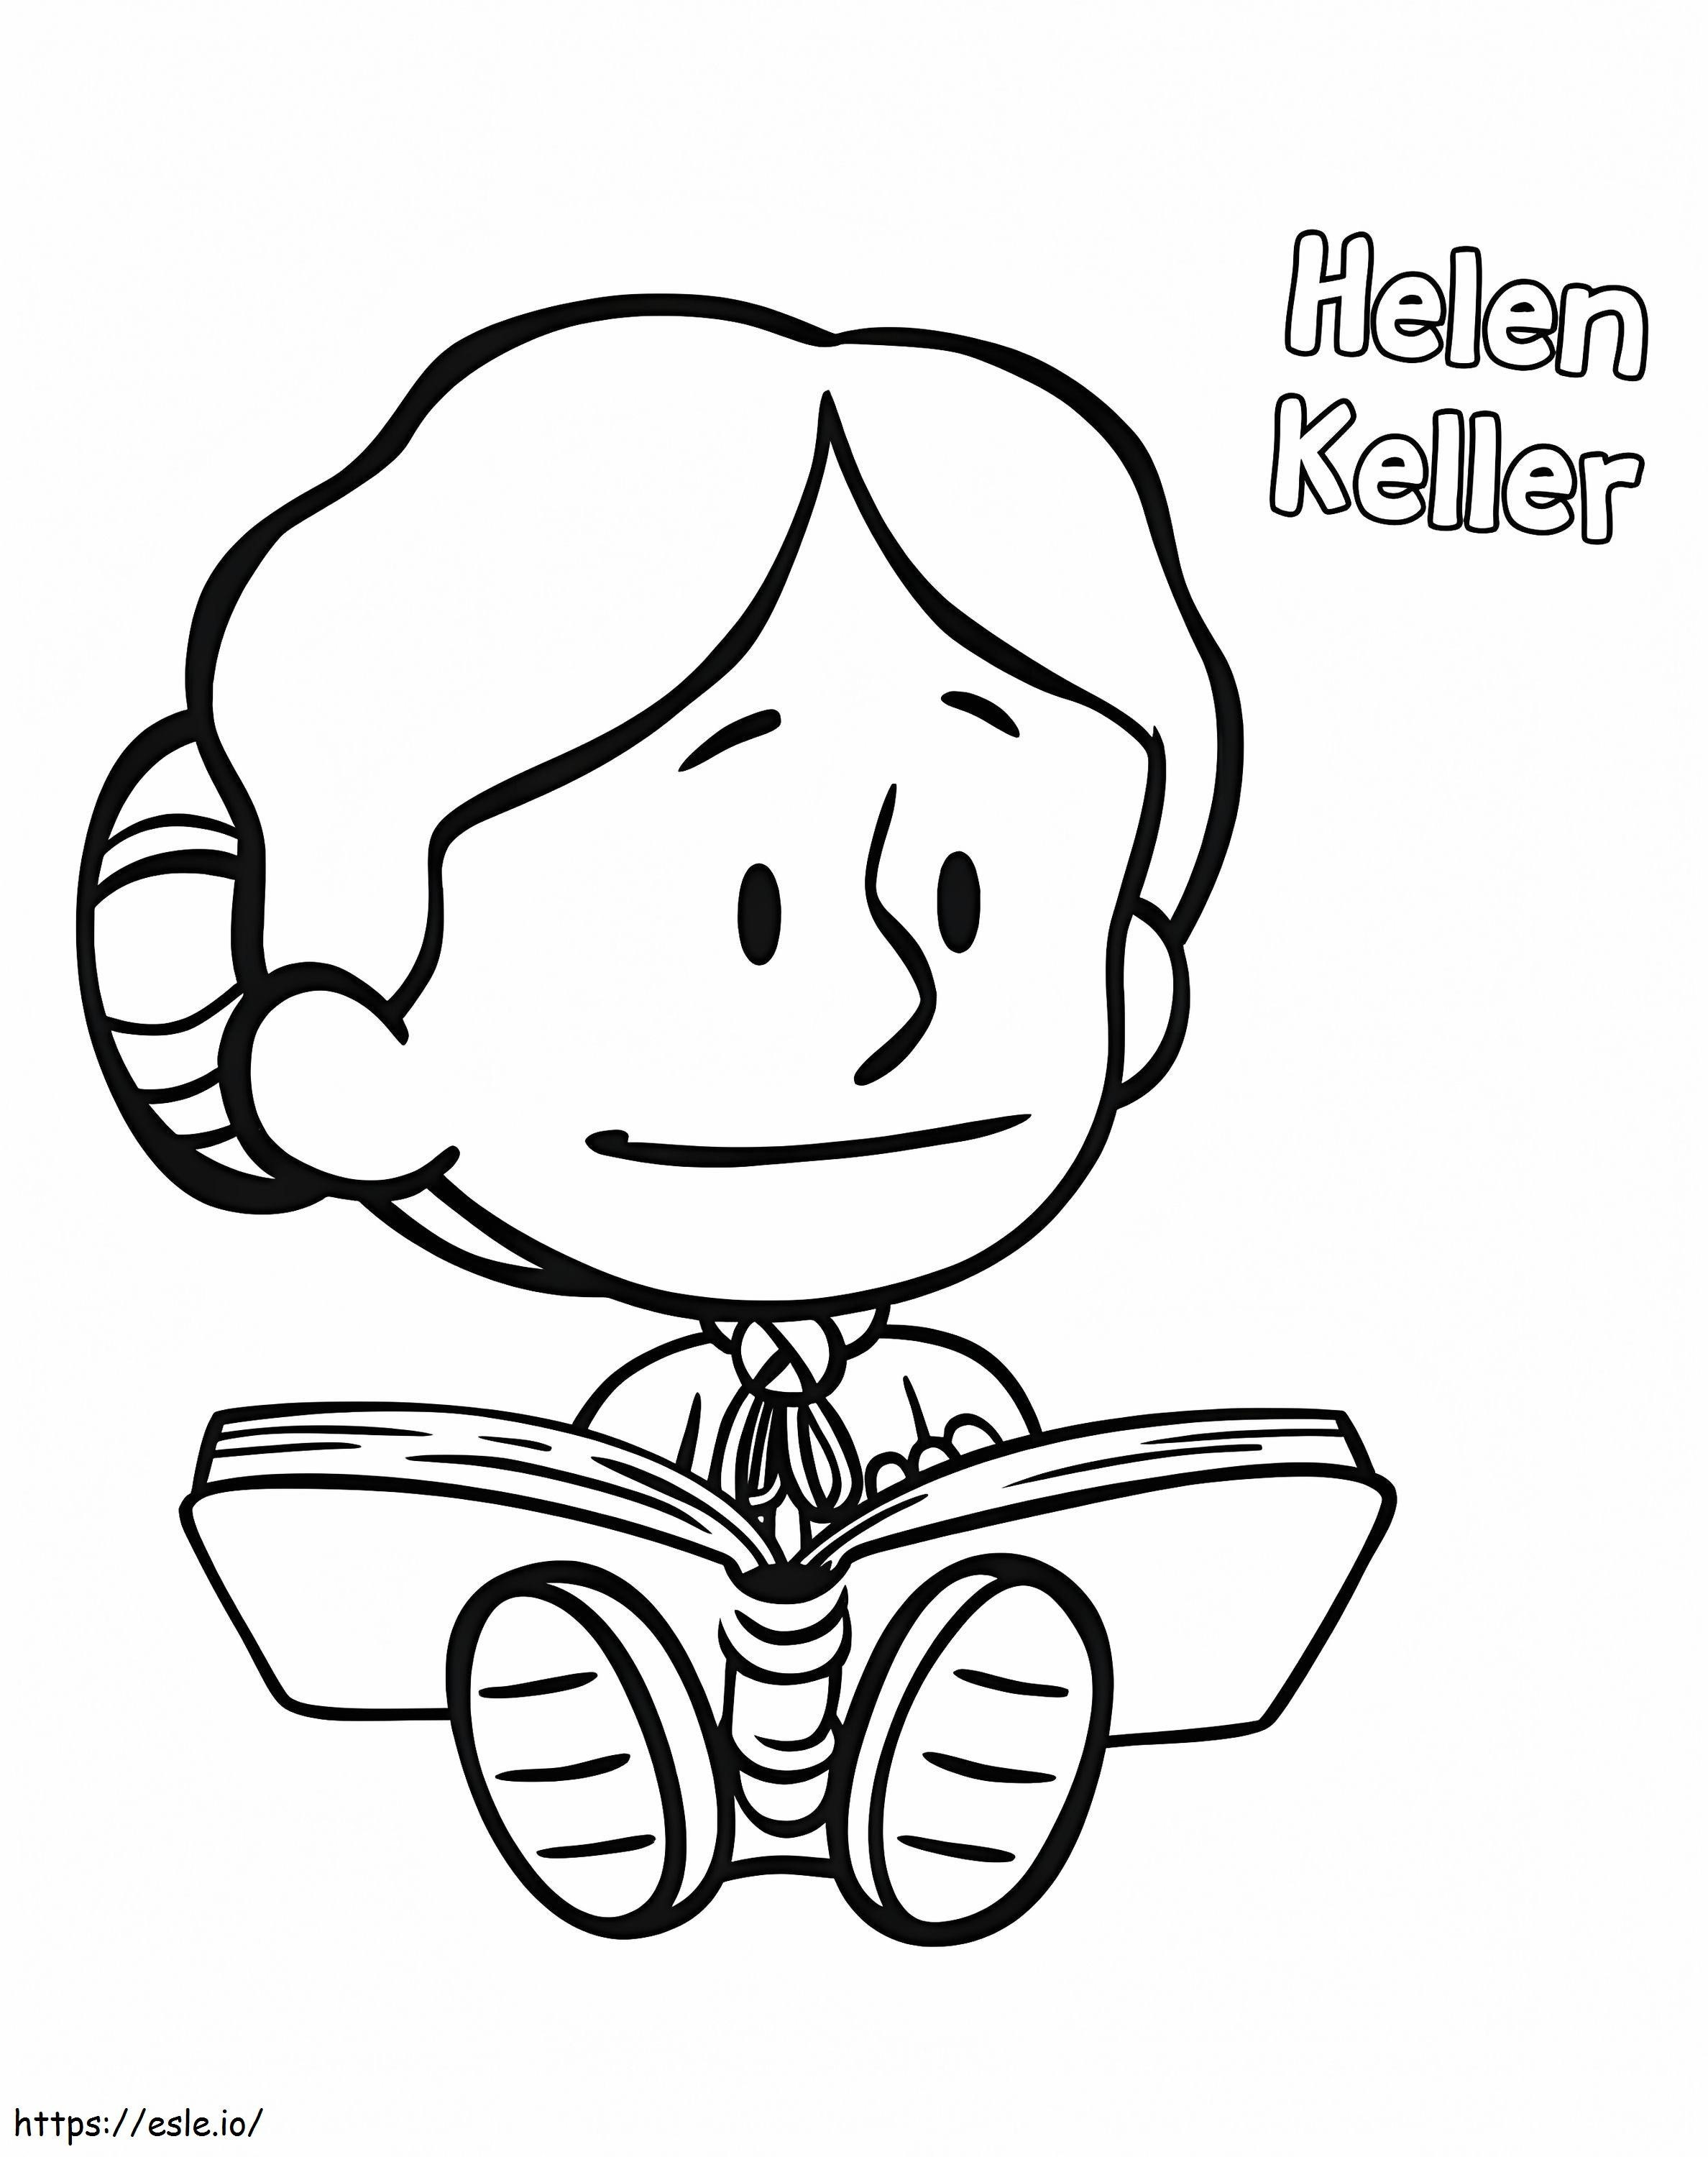 Chibi Helen Keller coloring page